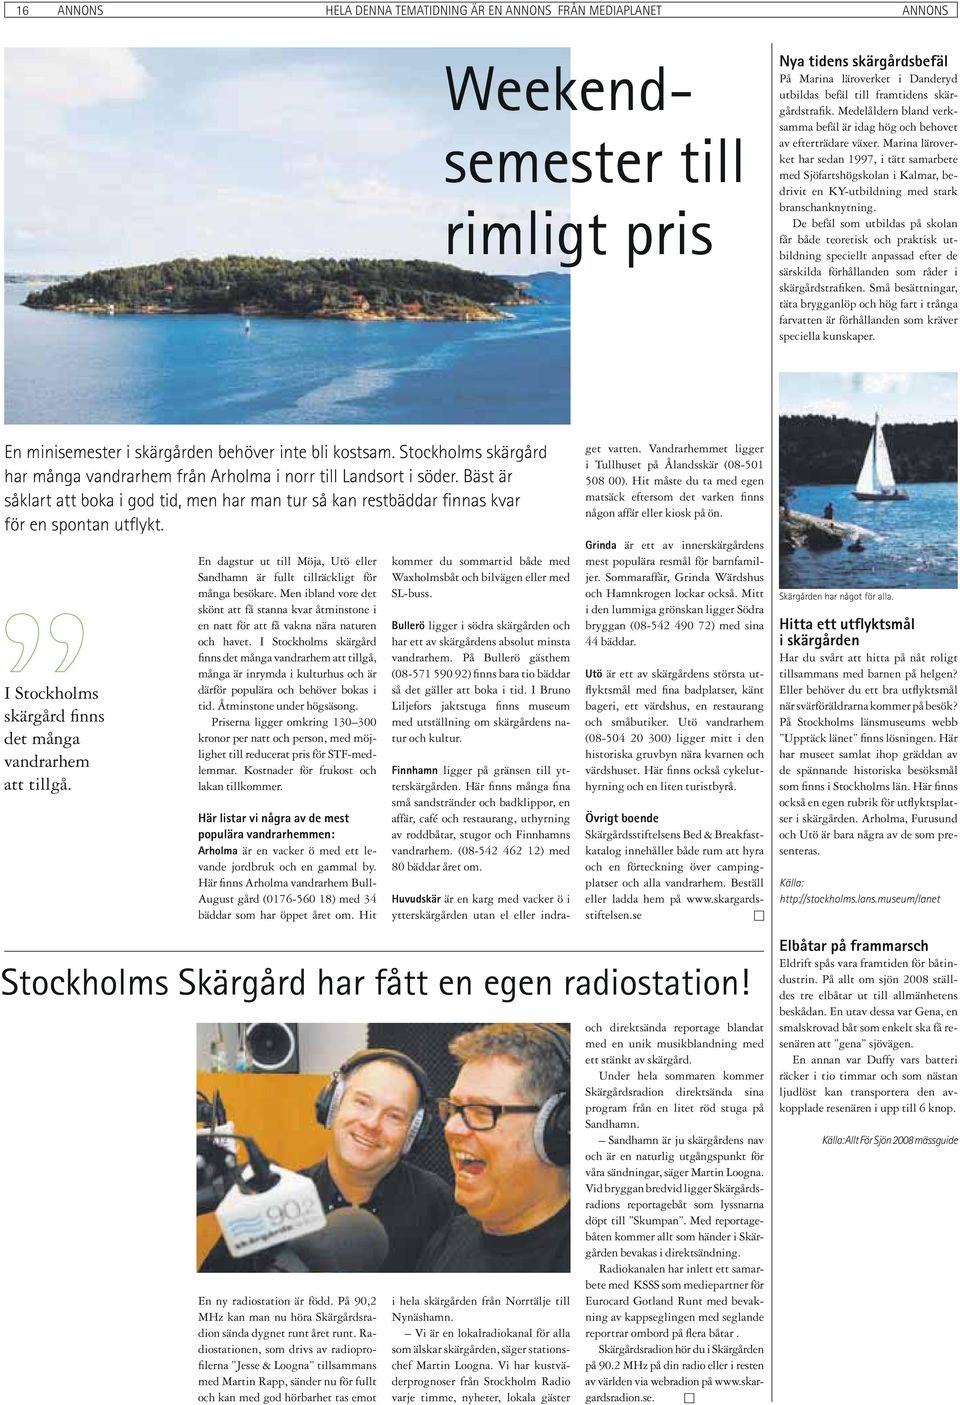 Marina läroverket har sedan 1997, i tätt samarbete med Sjöfartshögskolan i Kalmar, bedrivit en KY-utbildning med stark branschanknytning.